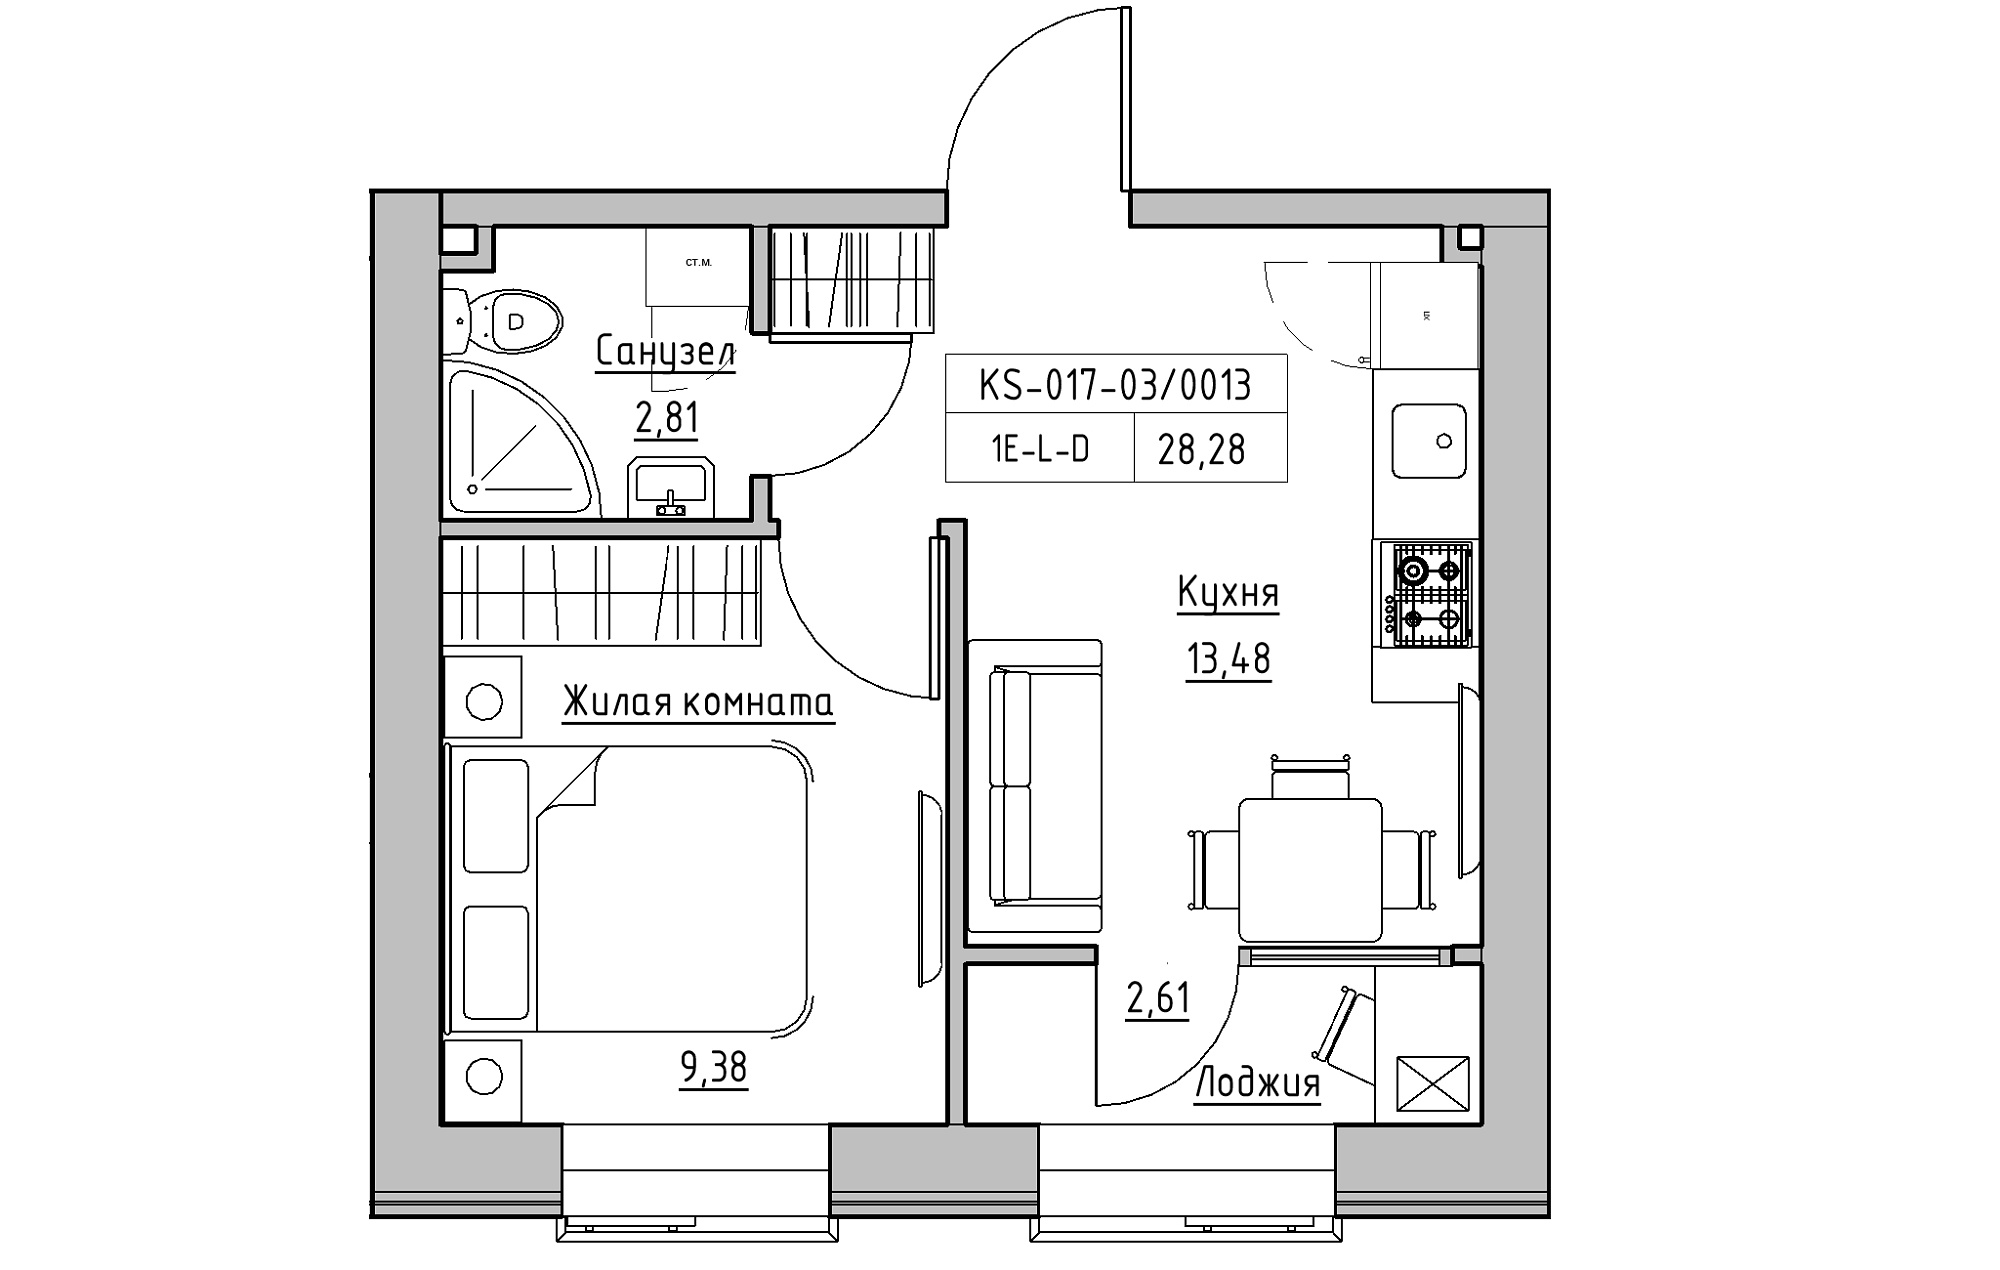 Планування 1-к квартира площею 28.28м2, KS-017-03/0013.